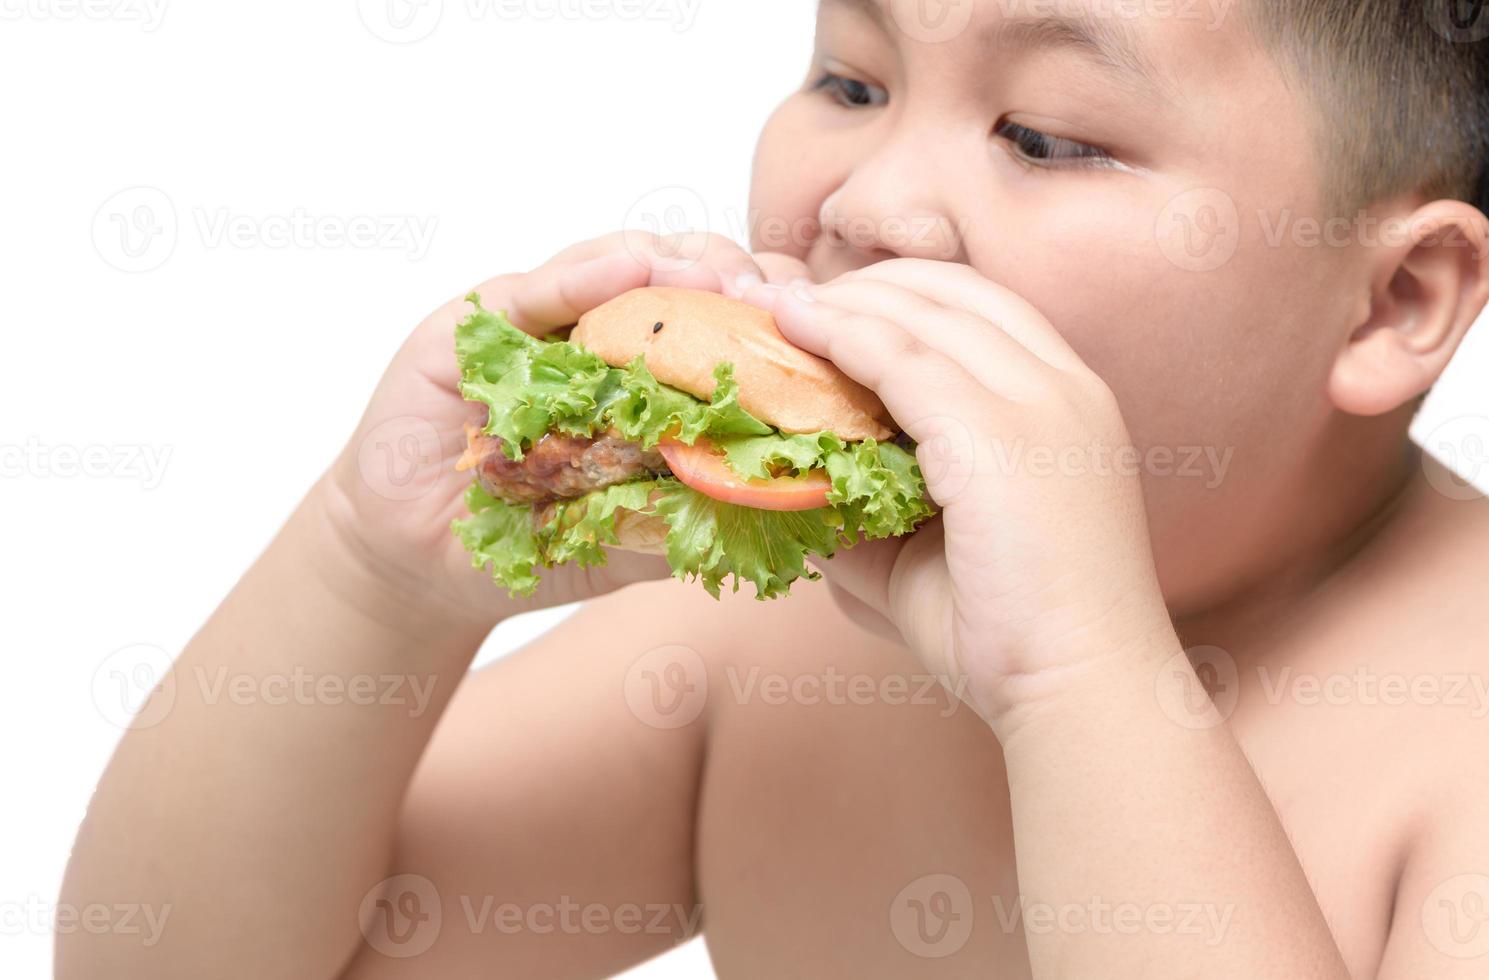 carne de porco Hamburger em obeso gordo Garoto mão fundo isolado foto